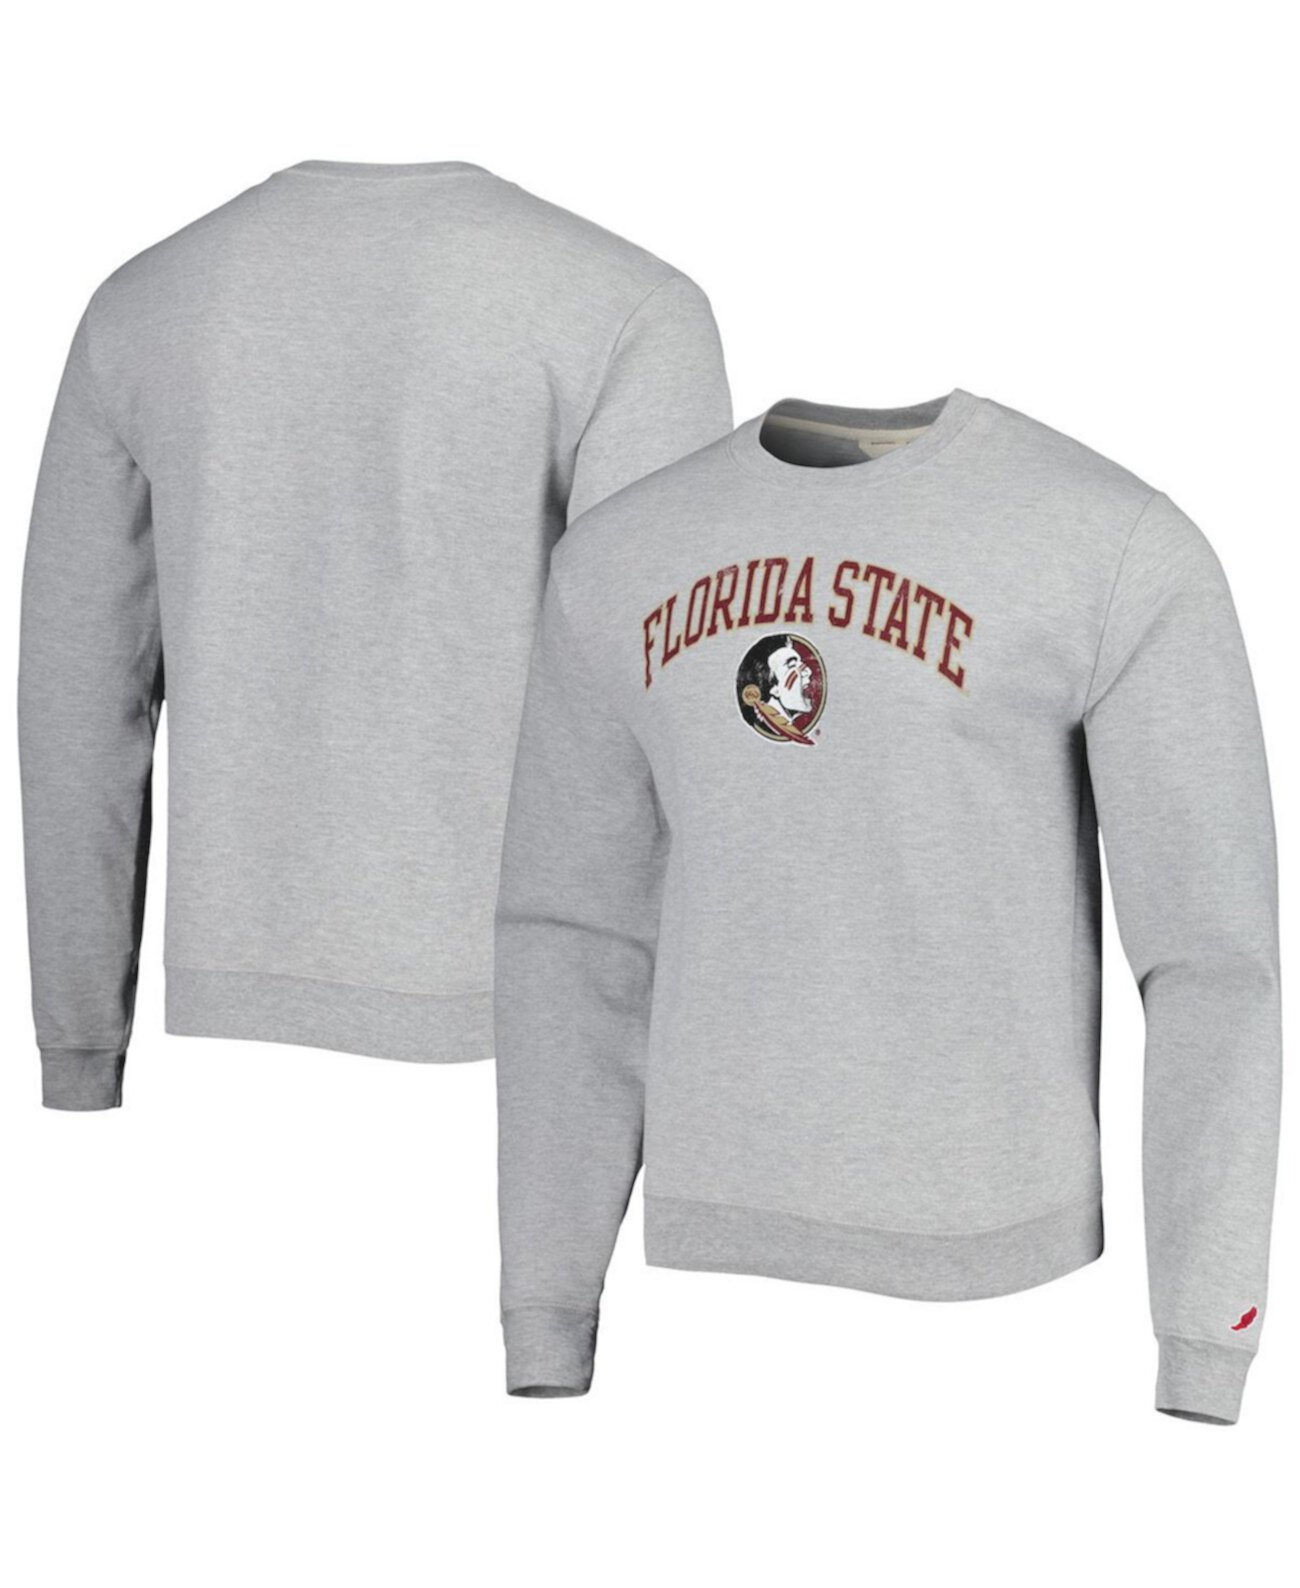 Мужской серый флисовый пуловер Florida State Seminoles 1965 Arch Essential свитшот League Collegiate Wear